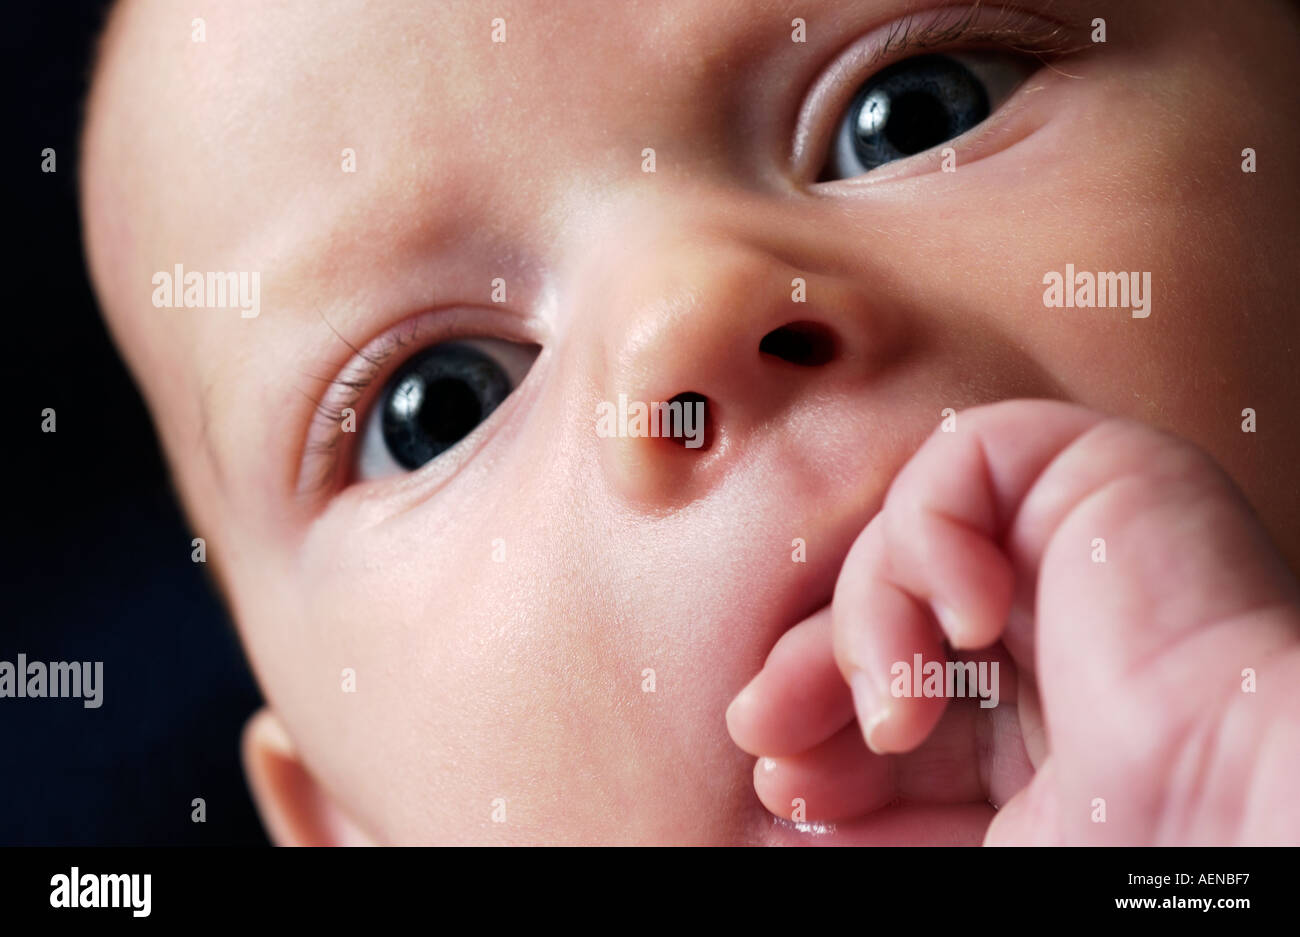 Nahaufnahme eines 3 Monate alten Babys Gesicht Stockfoto